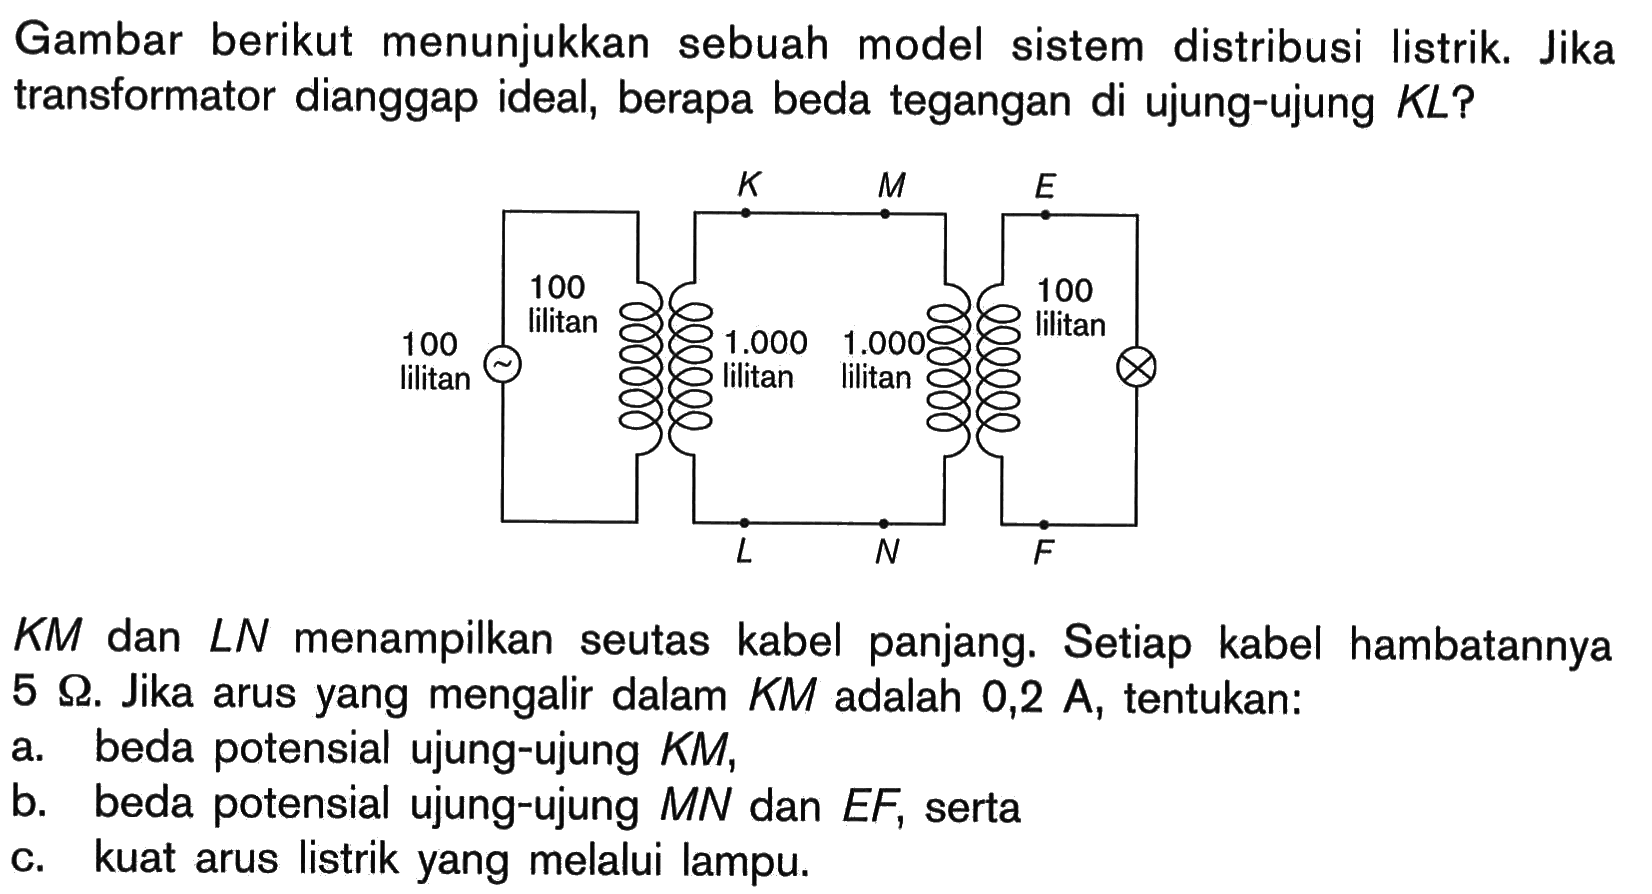 Gambar berikut menunjukkan sebuah model sistem distribusi listrik. Jika transformator dianggap ideal, berapa beda tegangan di ujung-ujung  K L  ?
 K M  dan  L N  menampilkan seutas kabel panjang. Setiap kabel hambatannya  5 Omega . Jika arus yang mengalir dalam  K M  adalah  0,2 A , tentukan:
a. beda potensial ujung-ujung  K M ,
b. beda potensial ujung-ujung  M N  dan  E F , serta
c. kuat arus listrik yang melalui lampu.